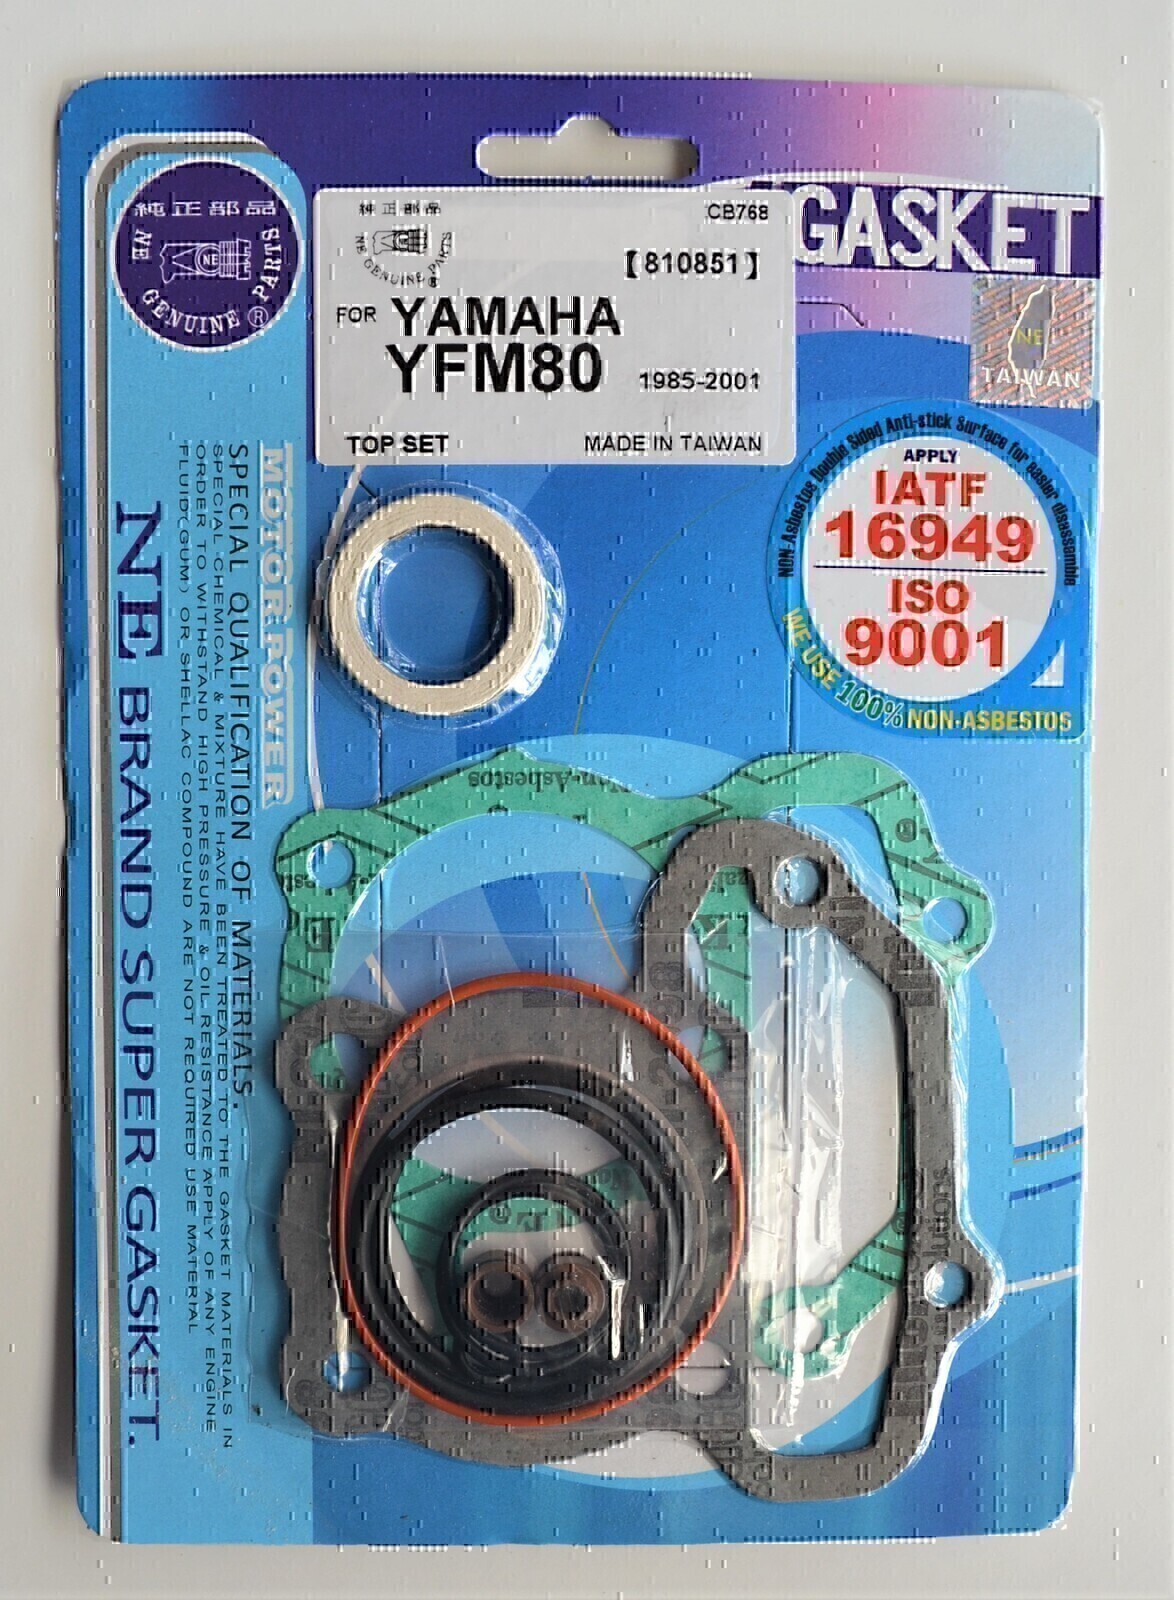 TOP END GASKET KIT FOR YAMAHA YFM80 YFM 80 1985 - 2001